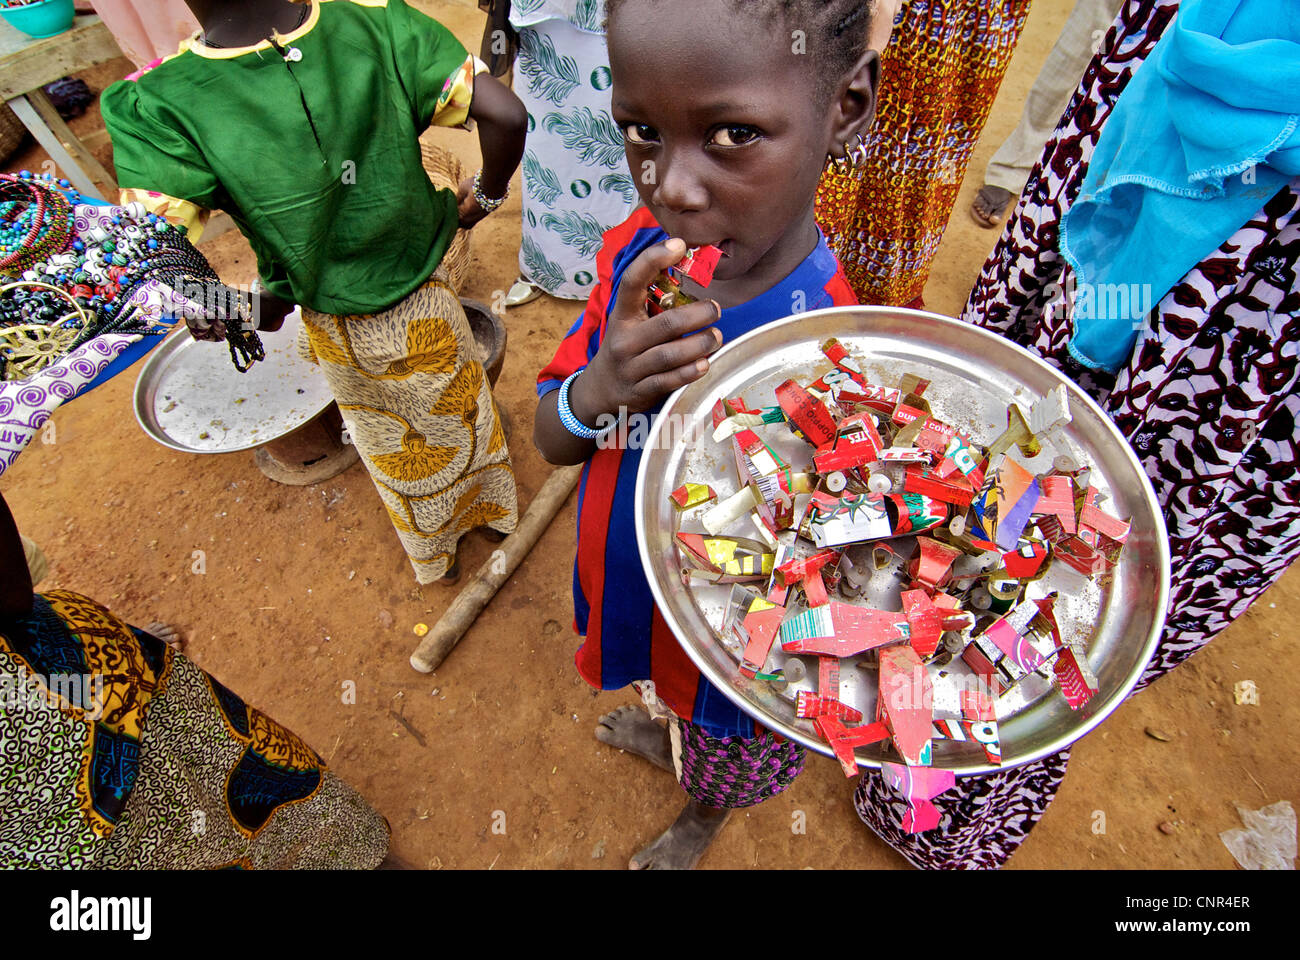 Un enfant qui vend des jouets fabriqués à partir de matériaux recyclés à Djenné, au Mali. Banque D'Images